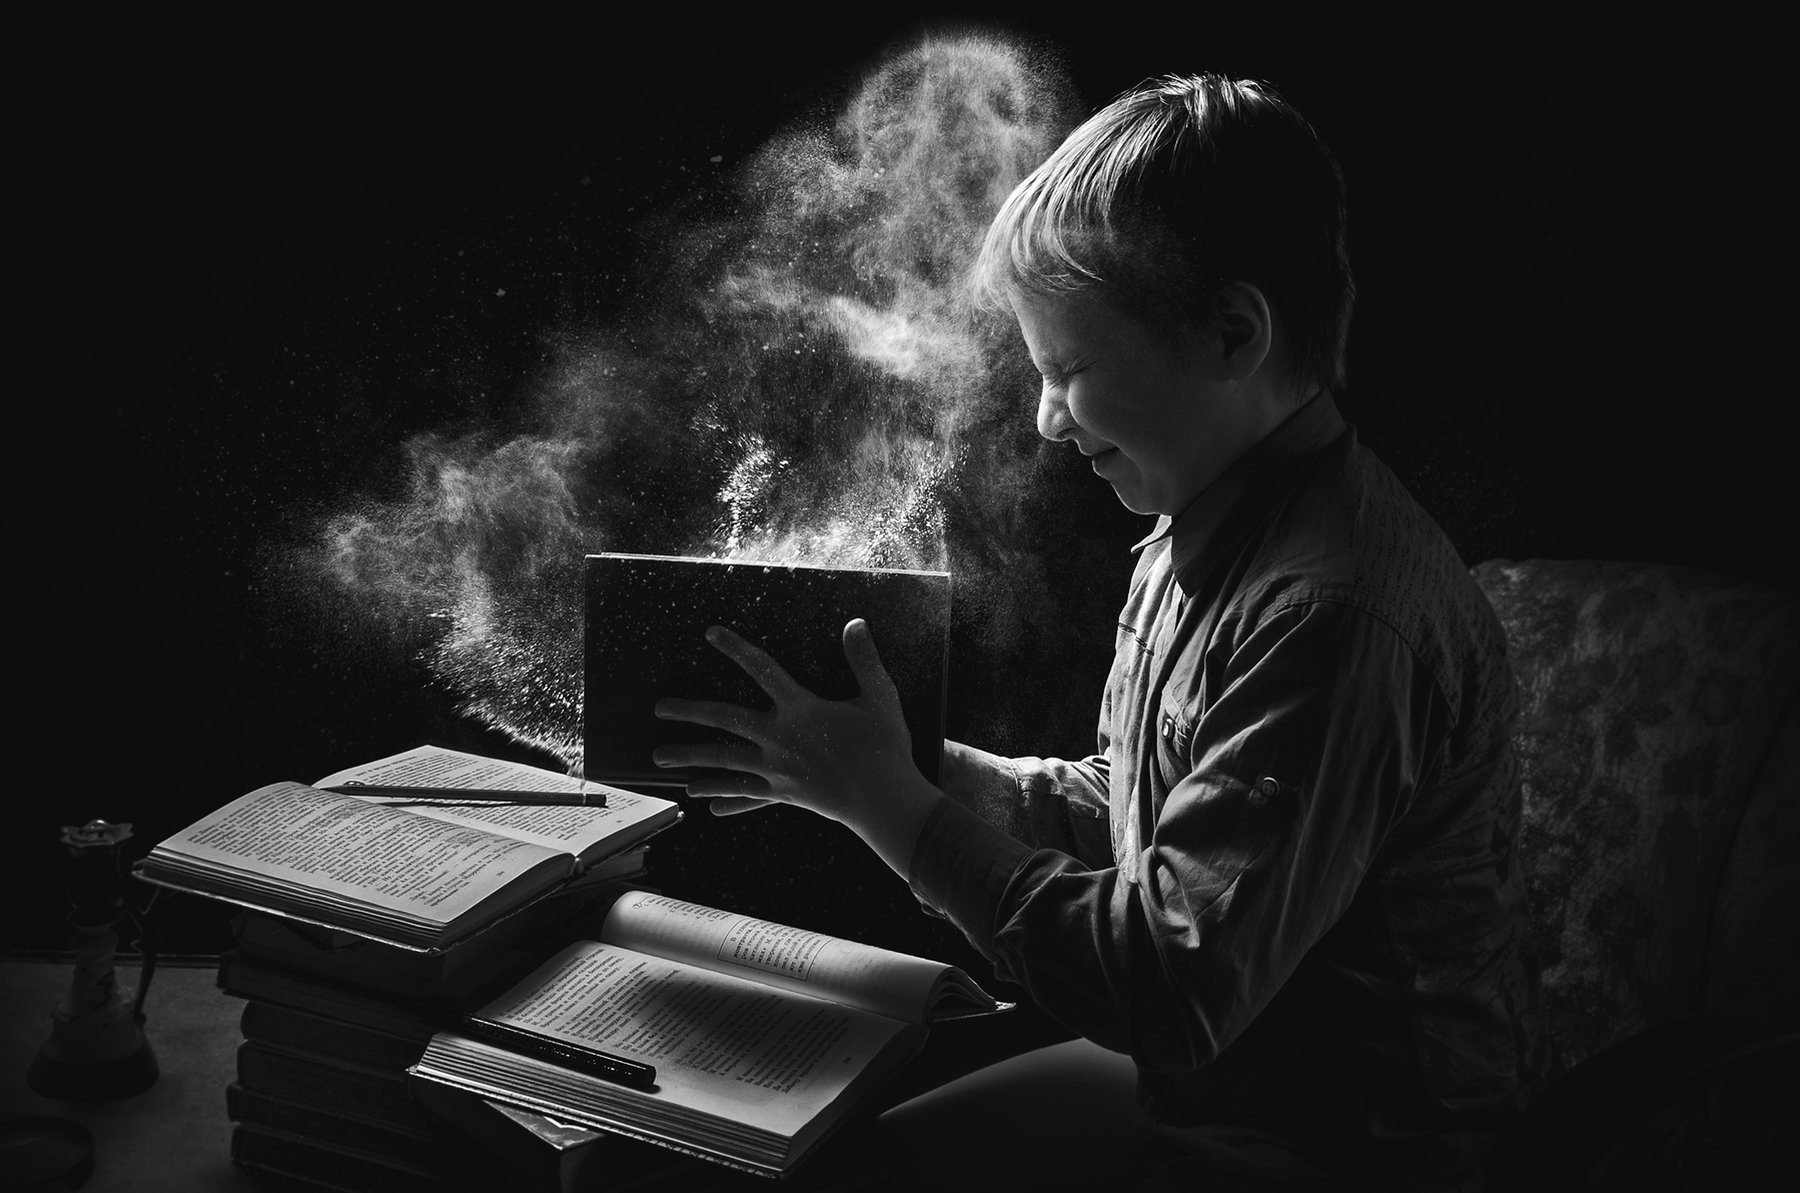 знания,книги,пыль,школа,ребёнок,учёба,чтение,чёрно-белый, Владимир Володин